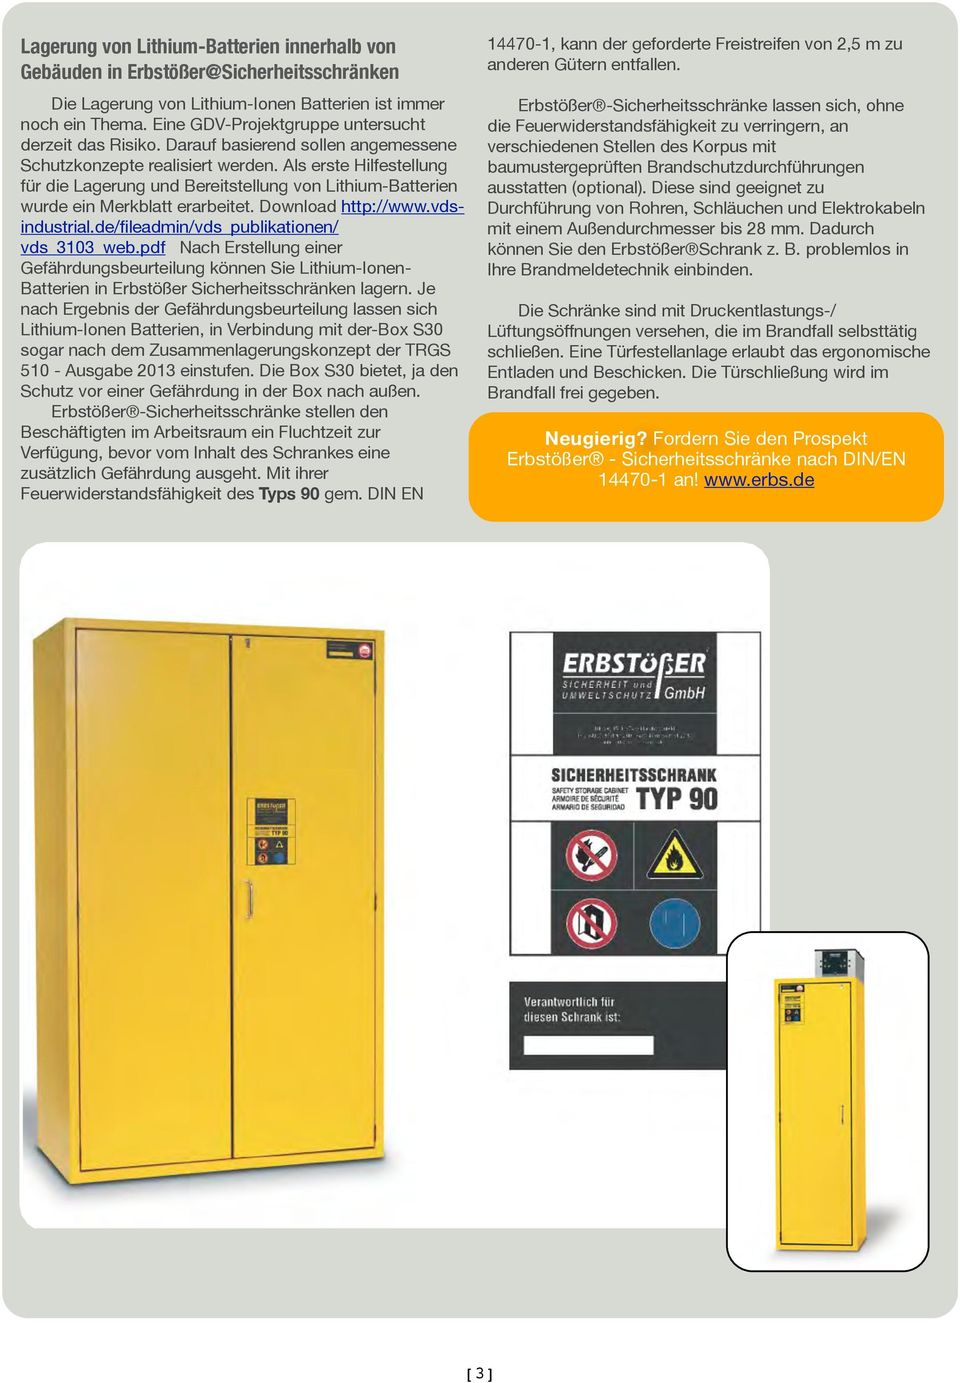 Als erste Hilfestellung für die Lagerung und Bereitstellung von Lithium-Batterien wurde ein Merkblatt erarbeitet. Download http://www.vdsindustrial.de/fileadmin/vds_publikationen/ vds_3103_web.